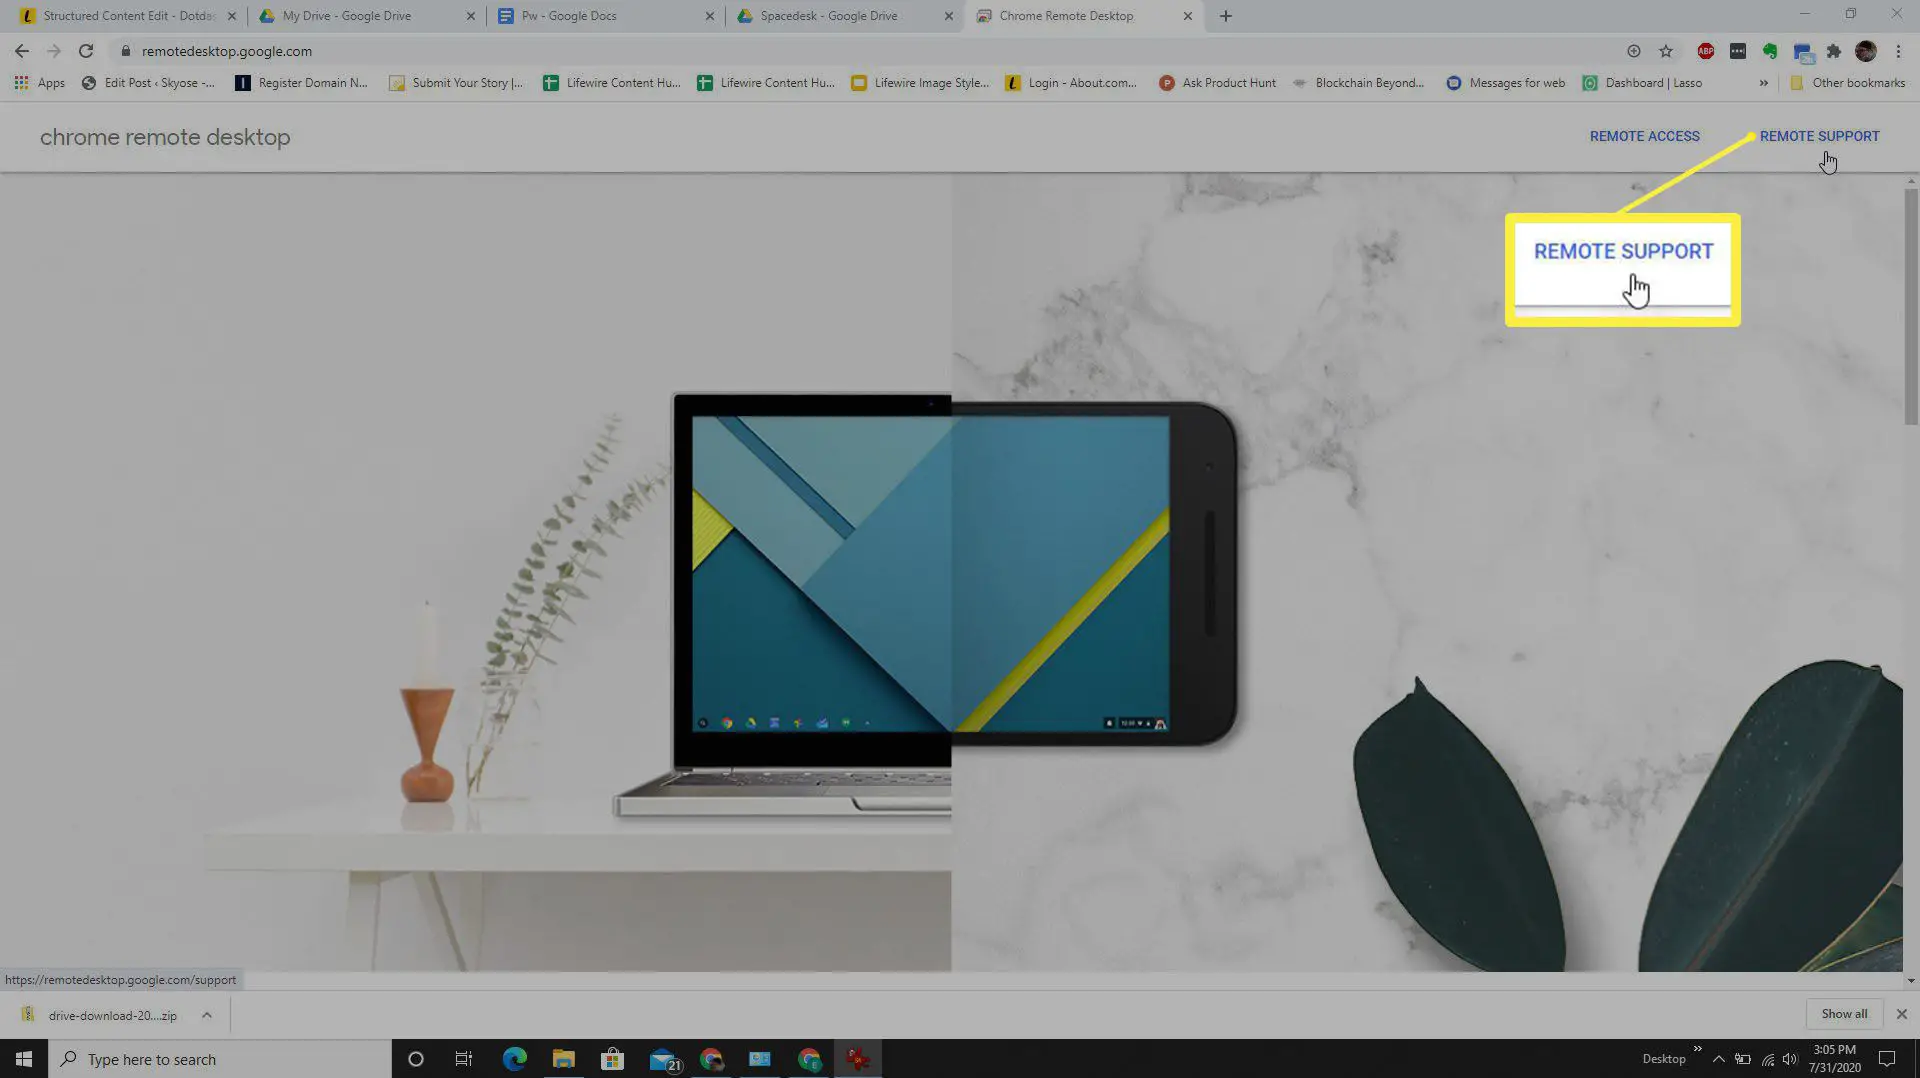 Captura de tela do link de suporte remoto no Google Remote Desktop.